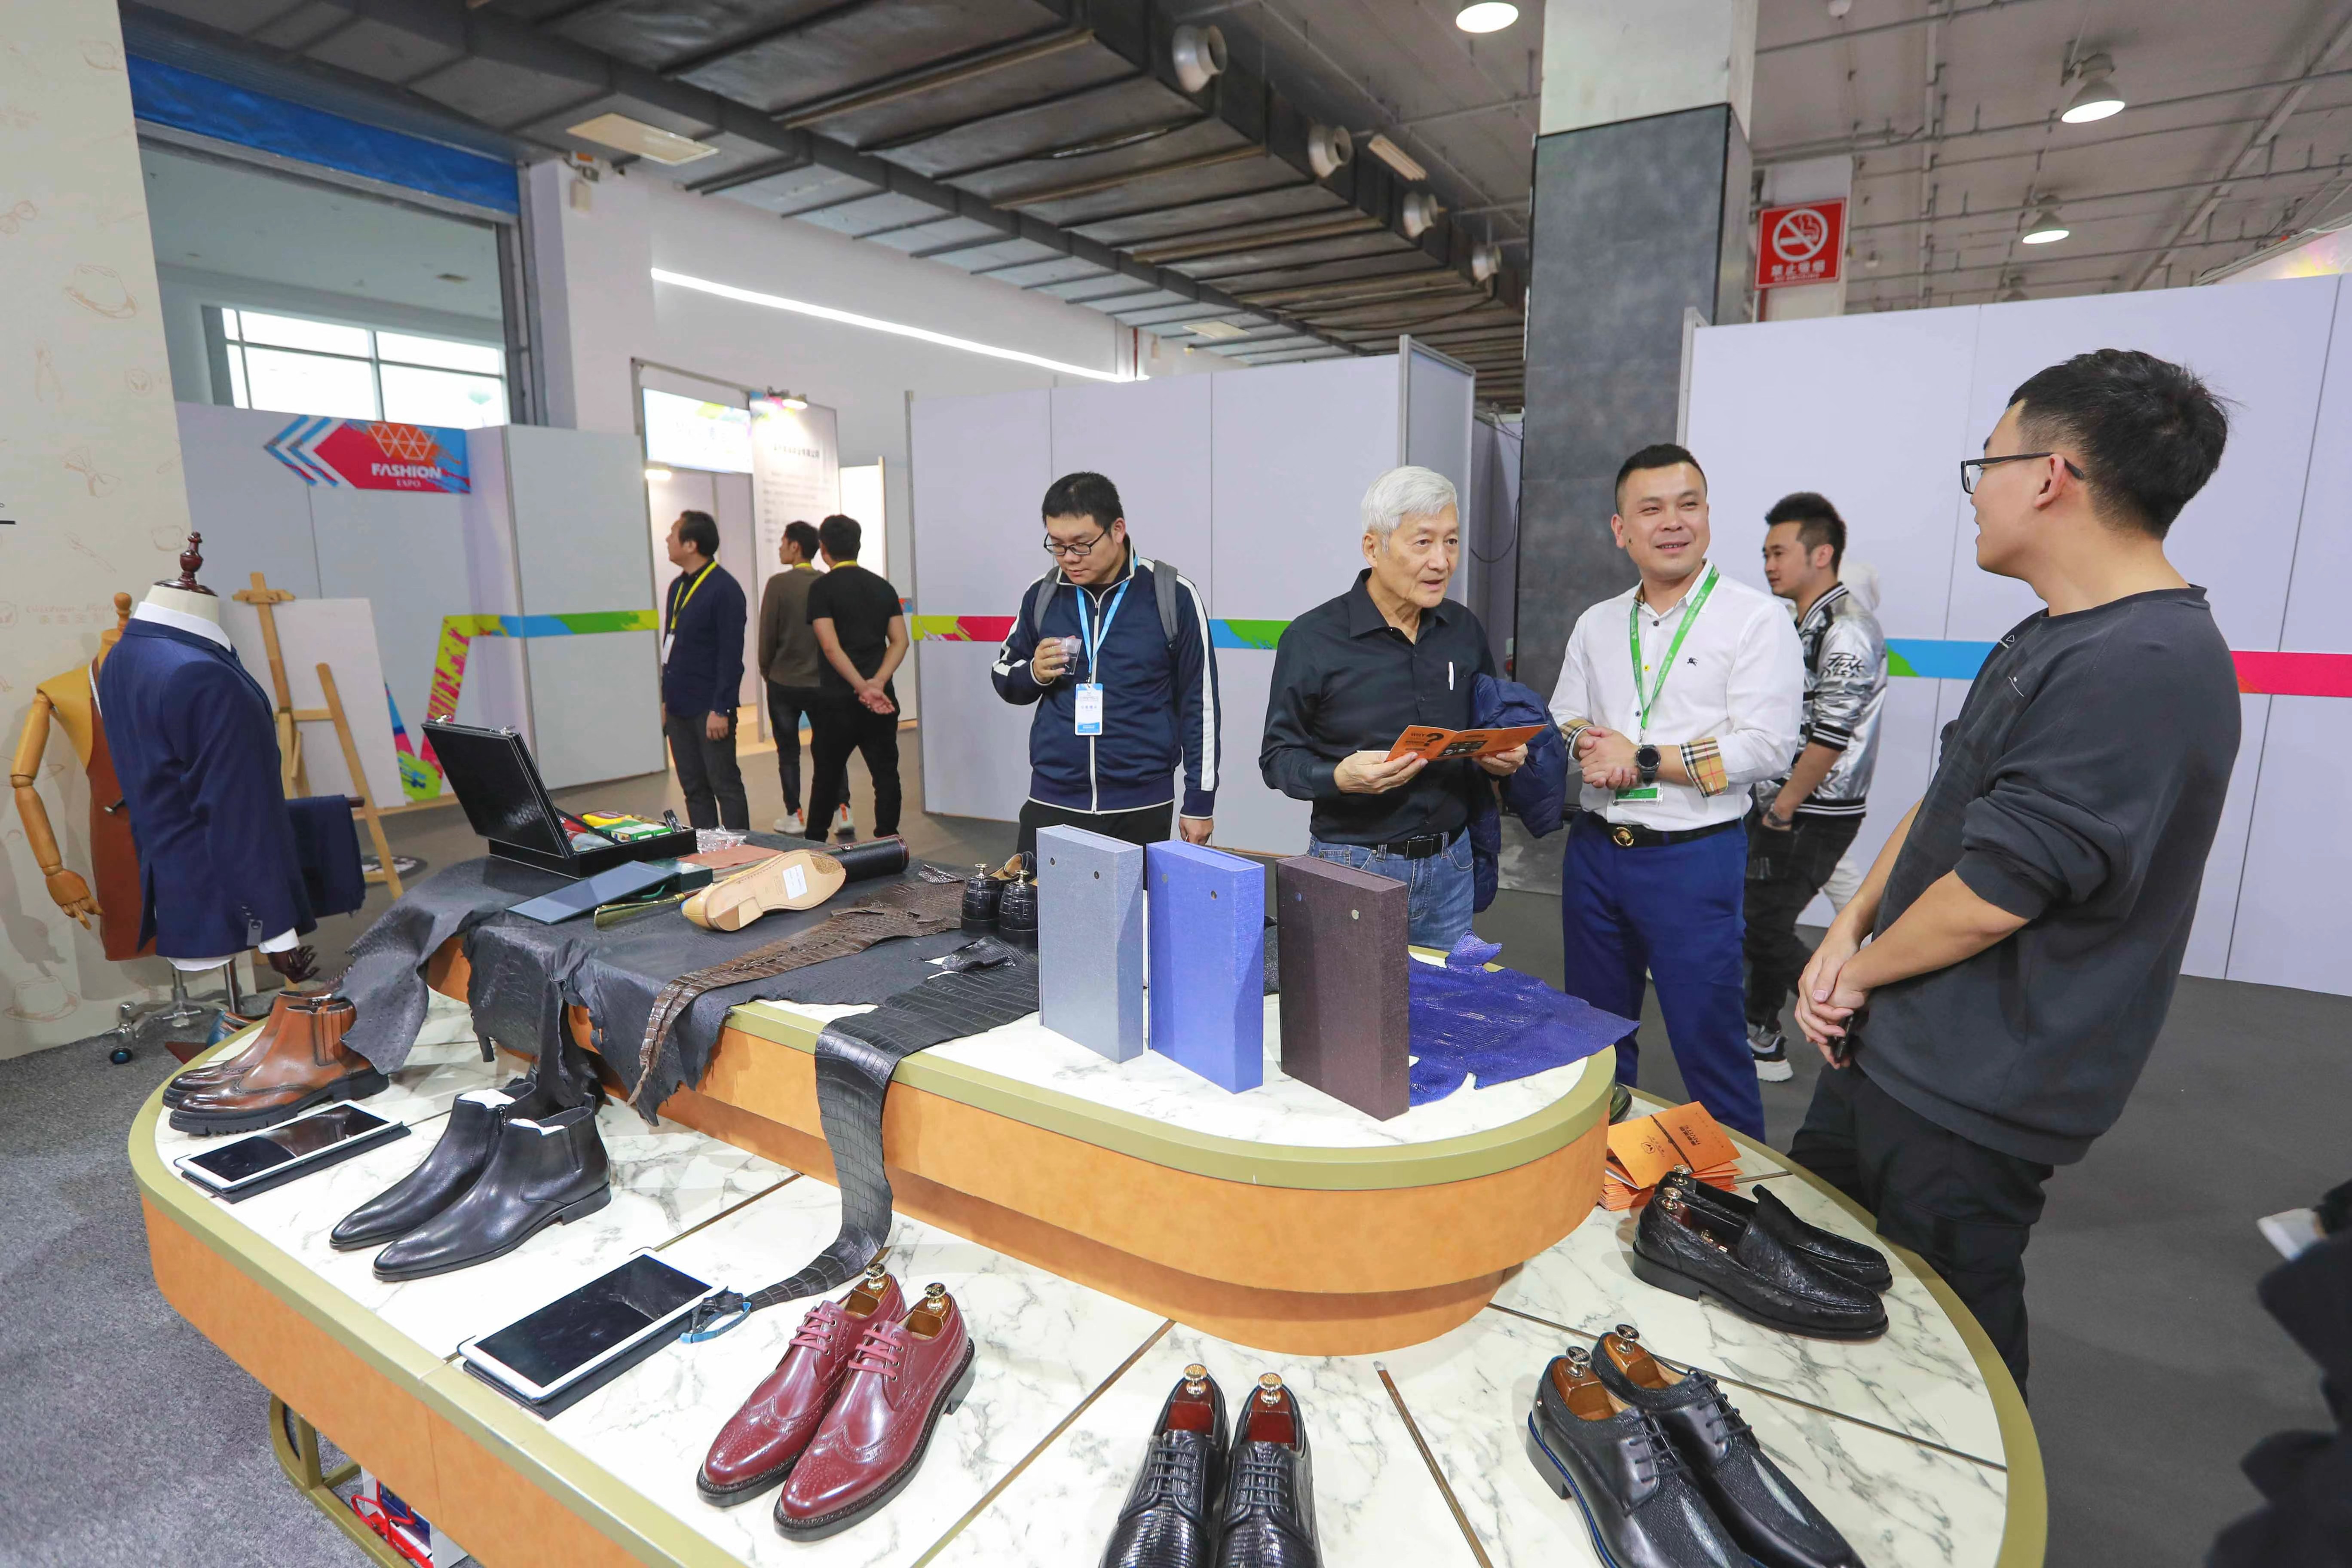 温州市商务局党组成员,副局长张建东在发布会上介绍,第十四届中国鞋都